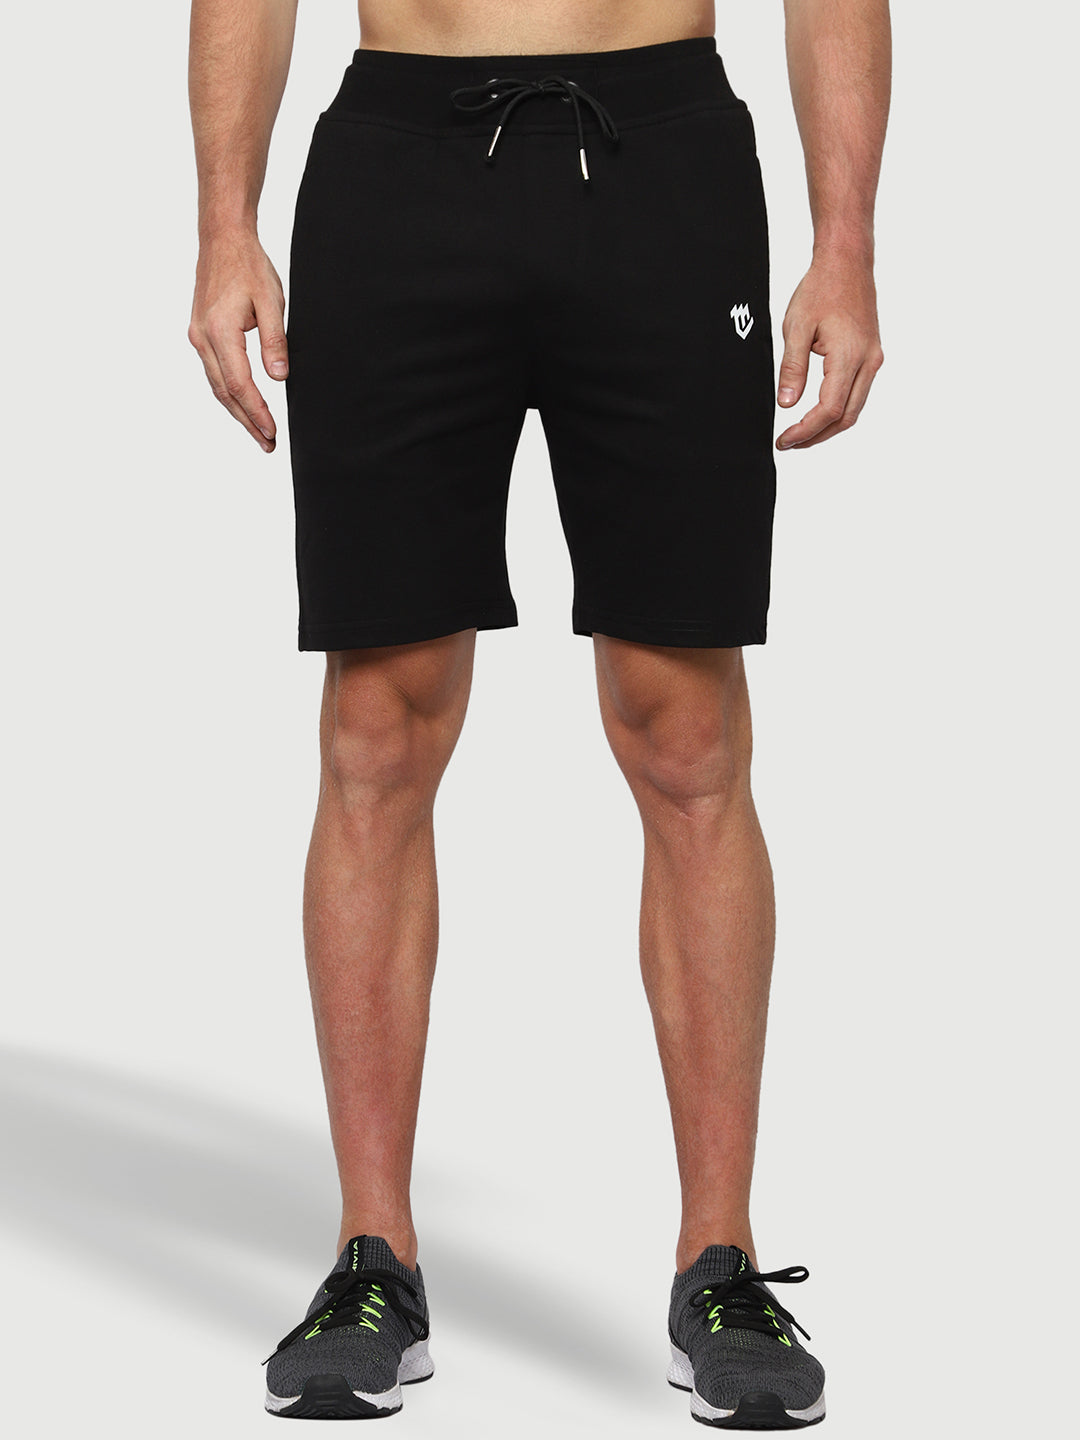 Mark Leute Black Shorts For Men